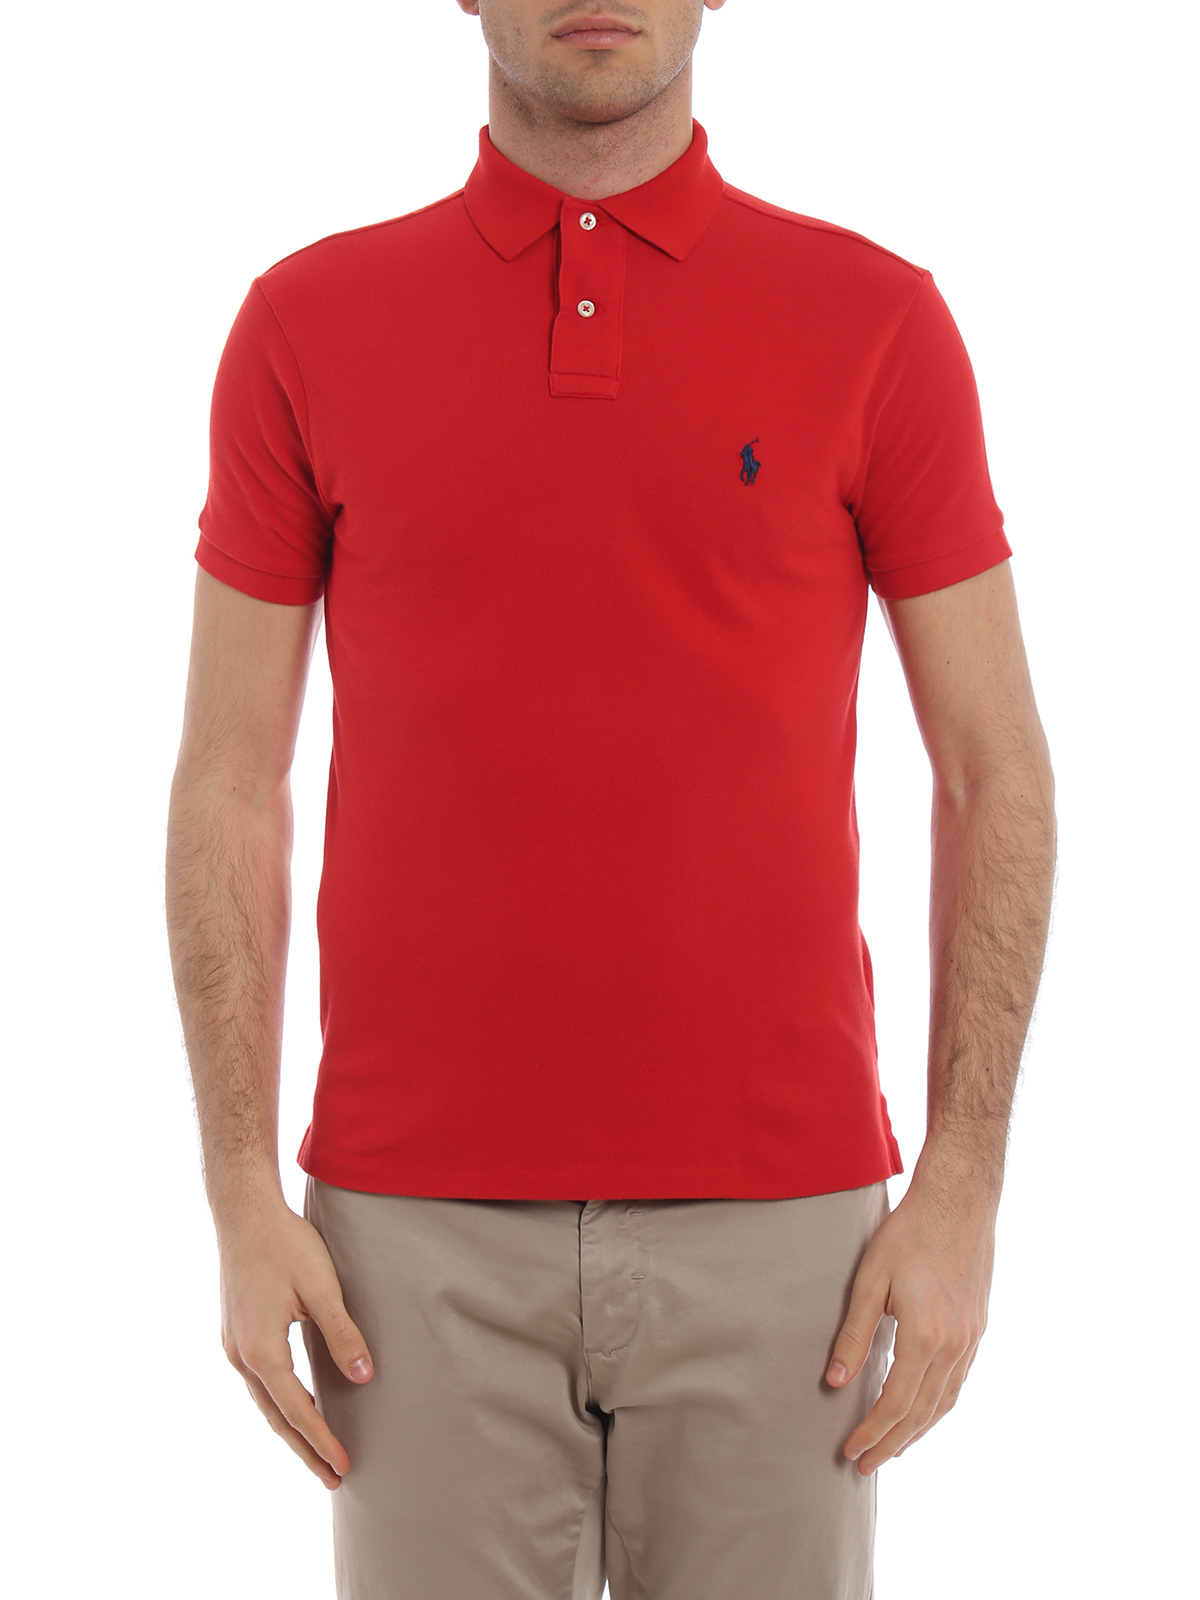 Polo shirts Polo Ralph Lauren - Classic red pique cotton polo shirt -  710548797005